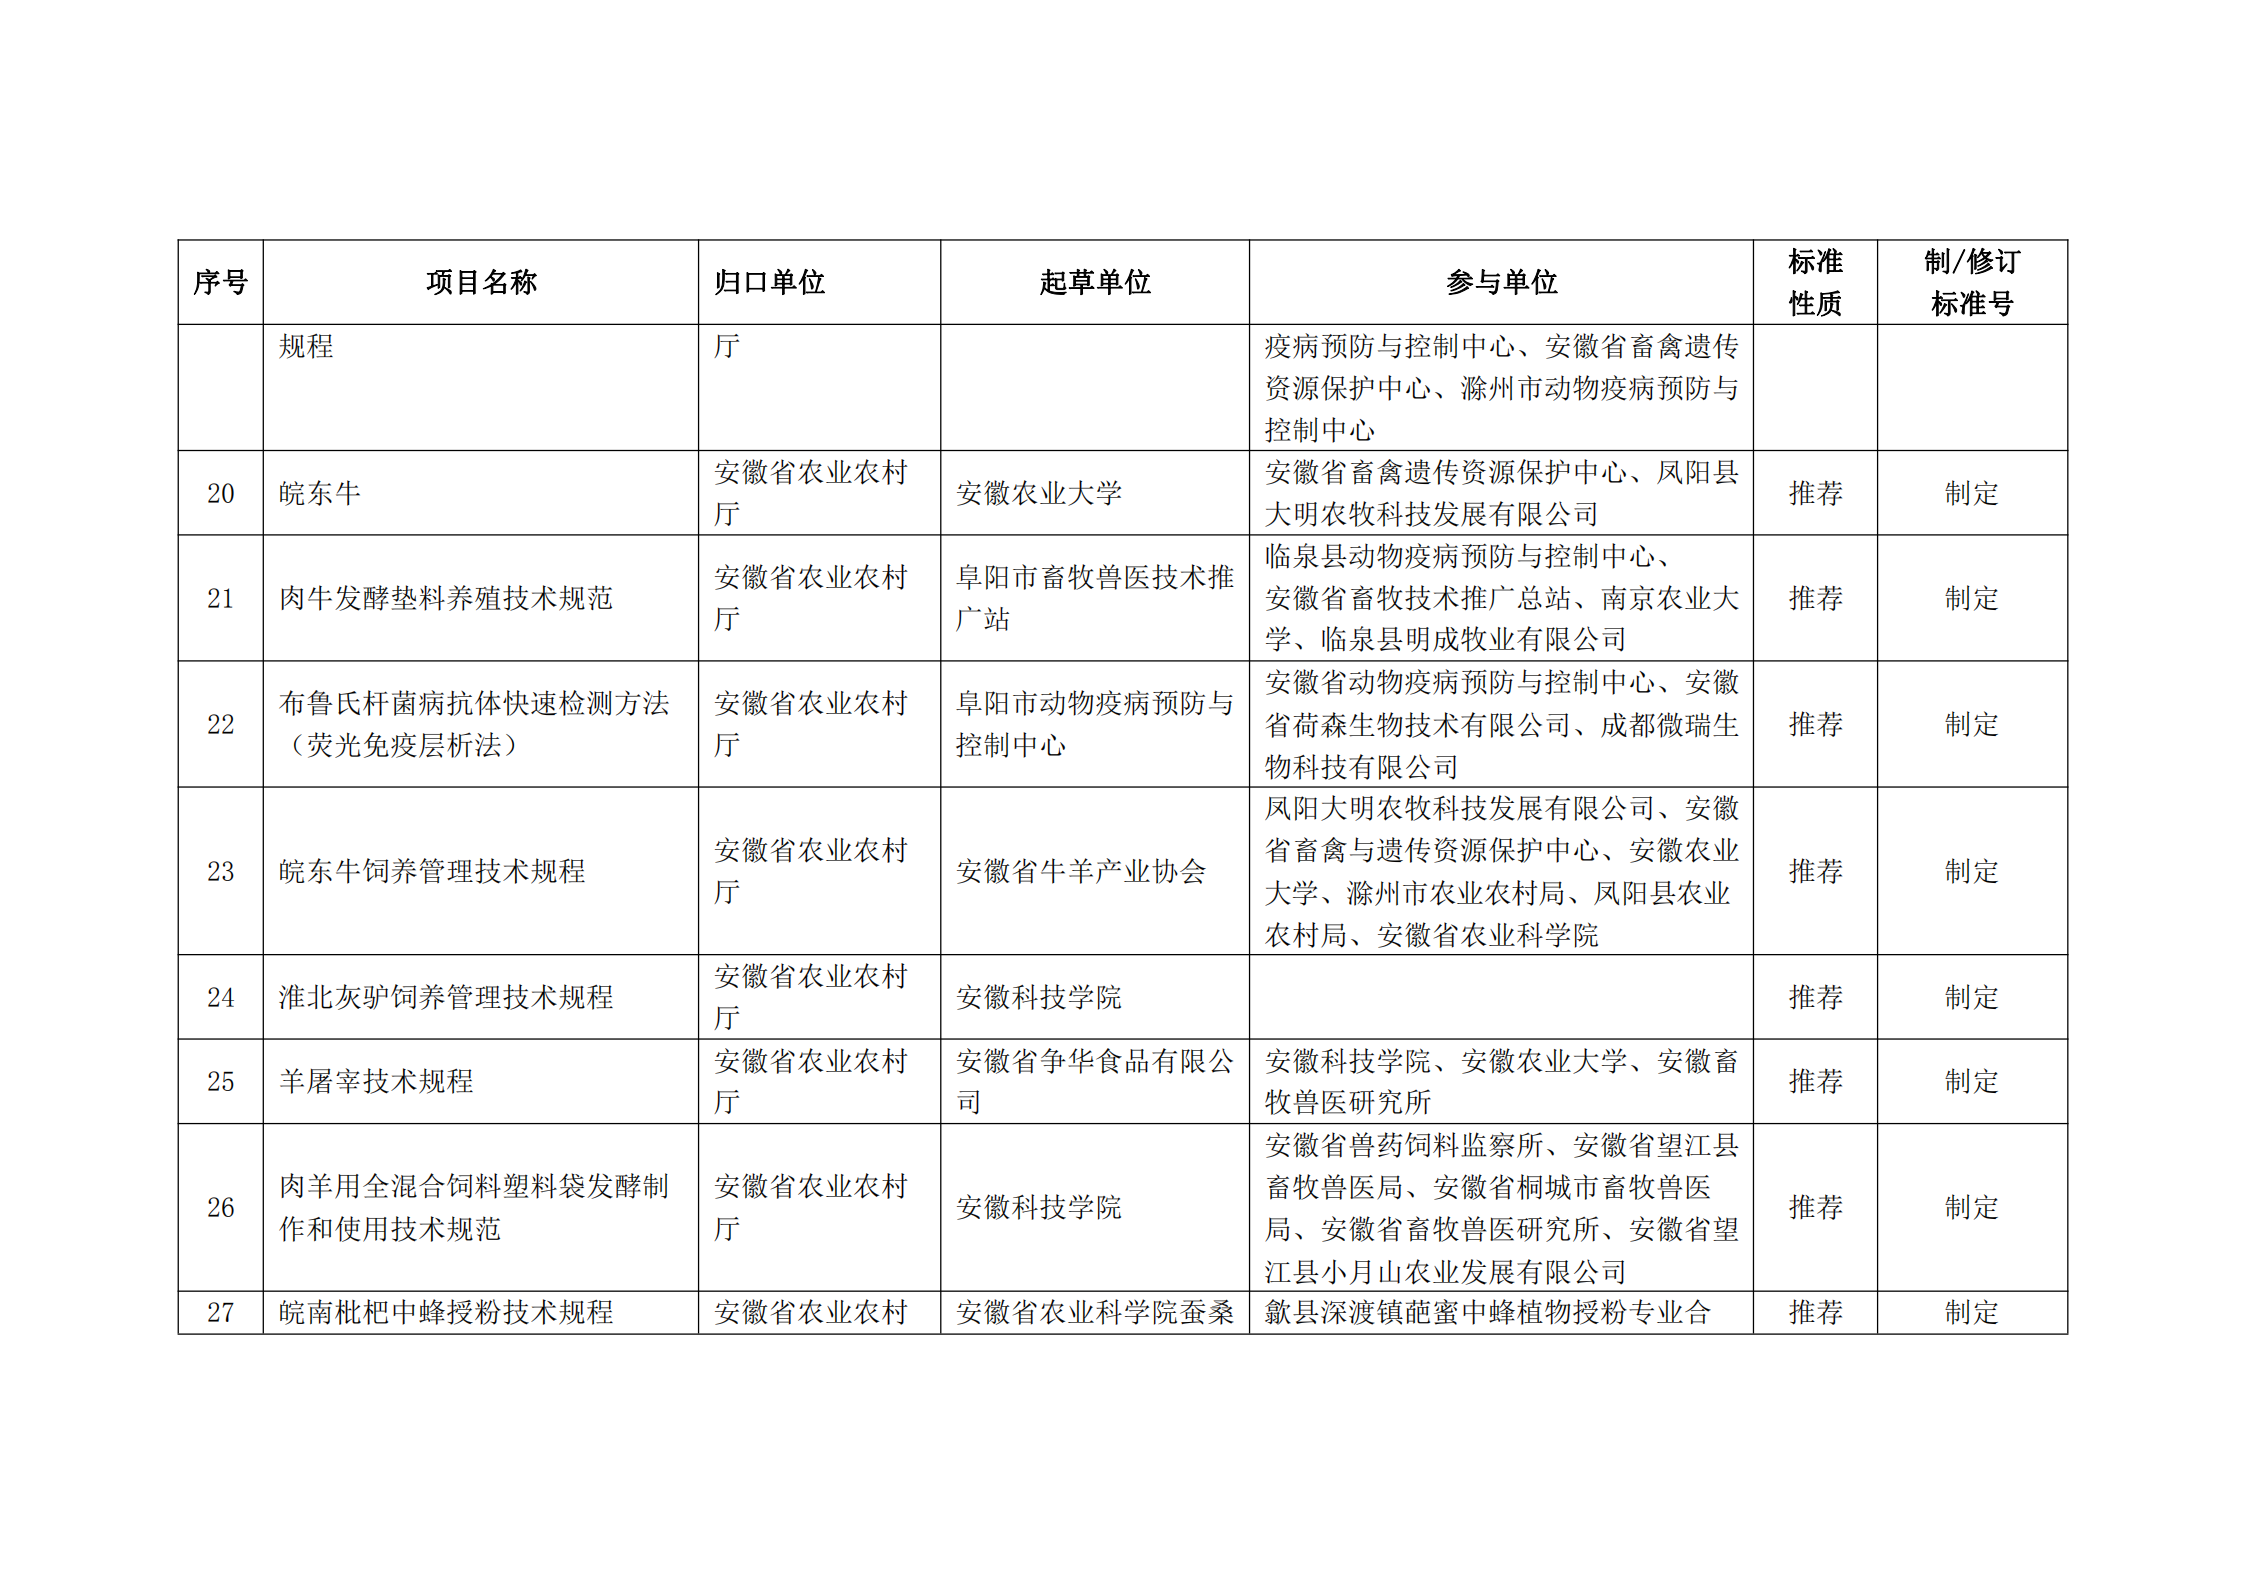 2020 年第二批安徽省地方标准制、修订计划项目汇总表(图3)